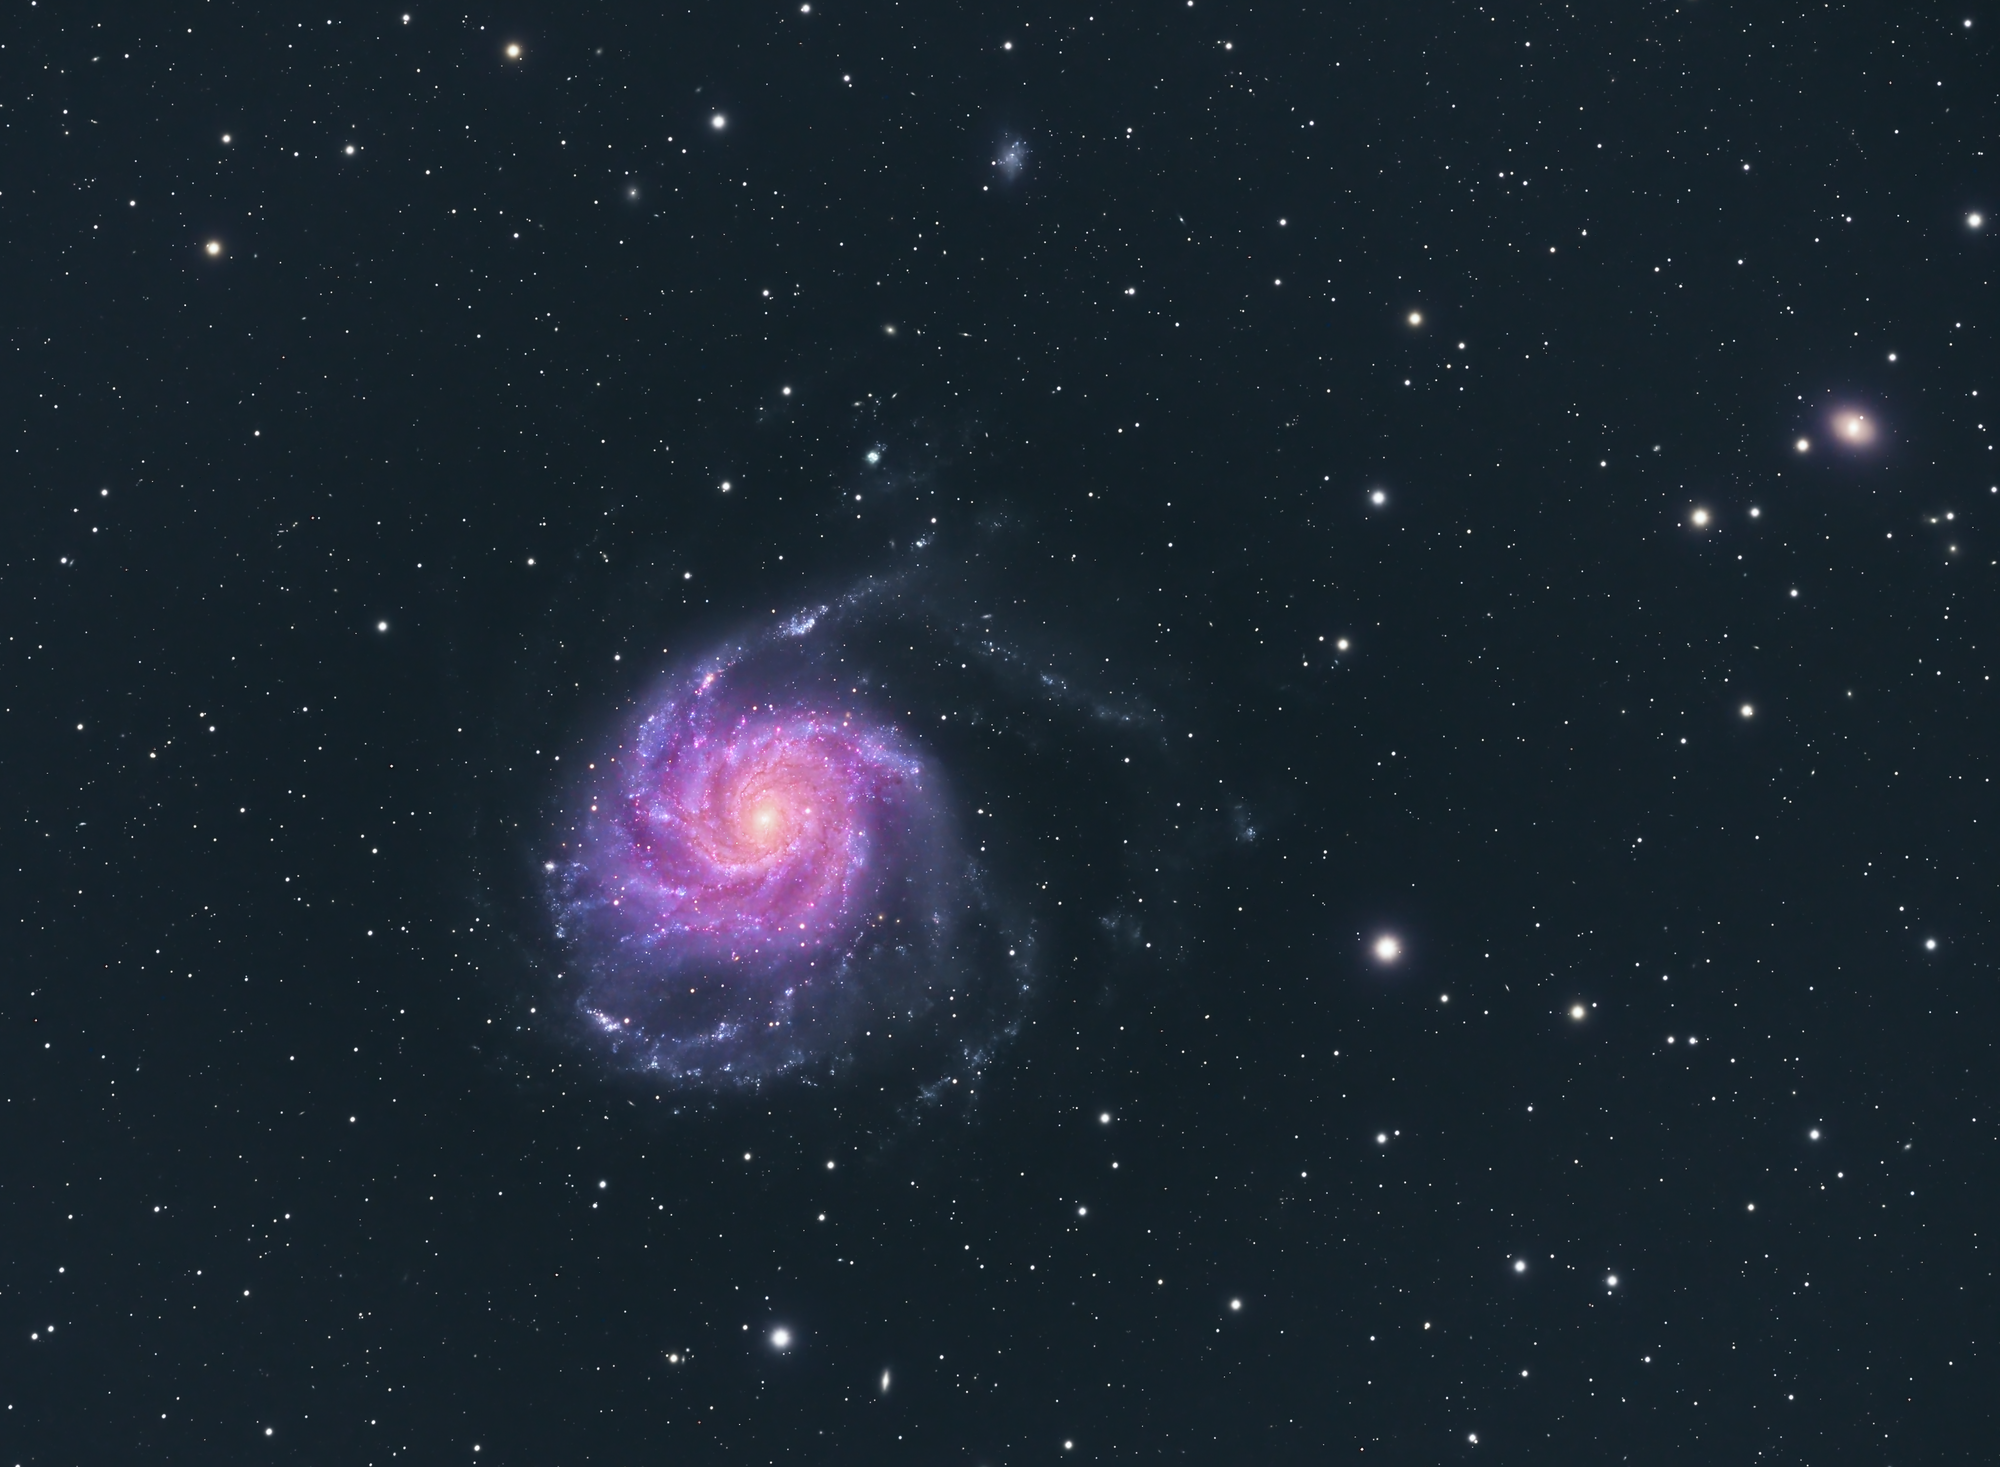 Ein galaktisches Feuerrad - Messier 101